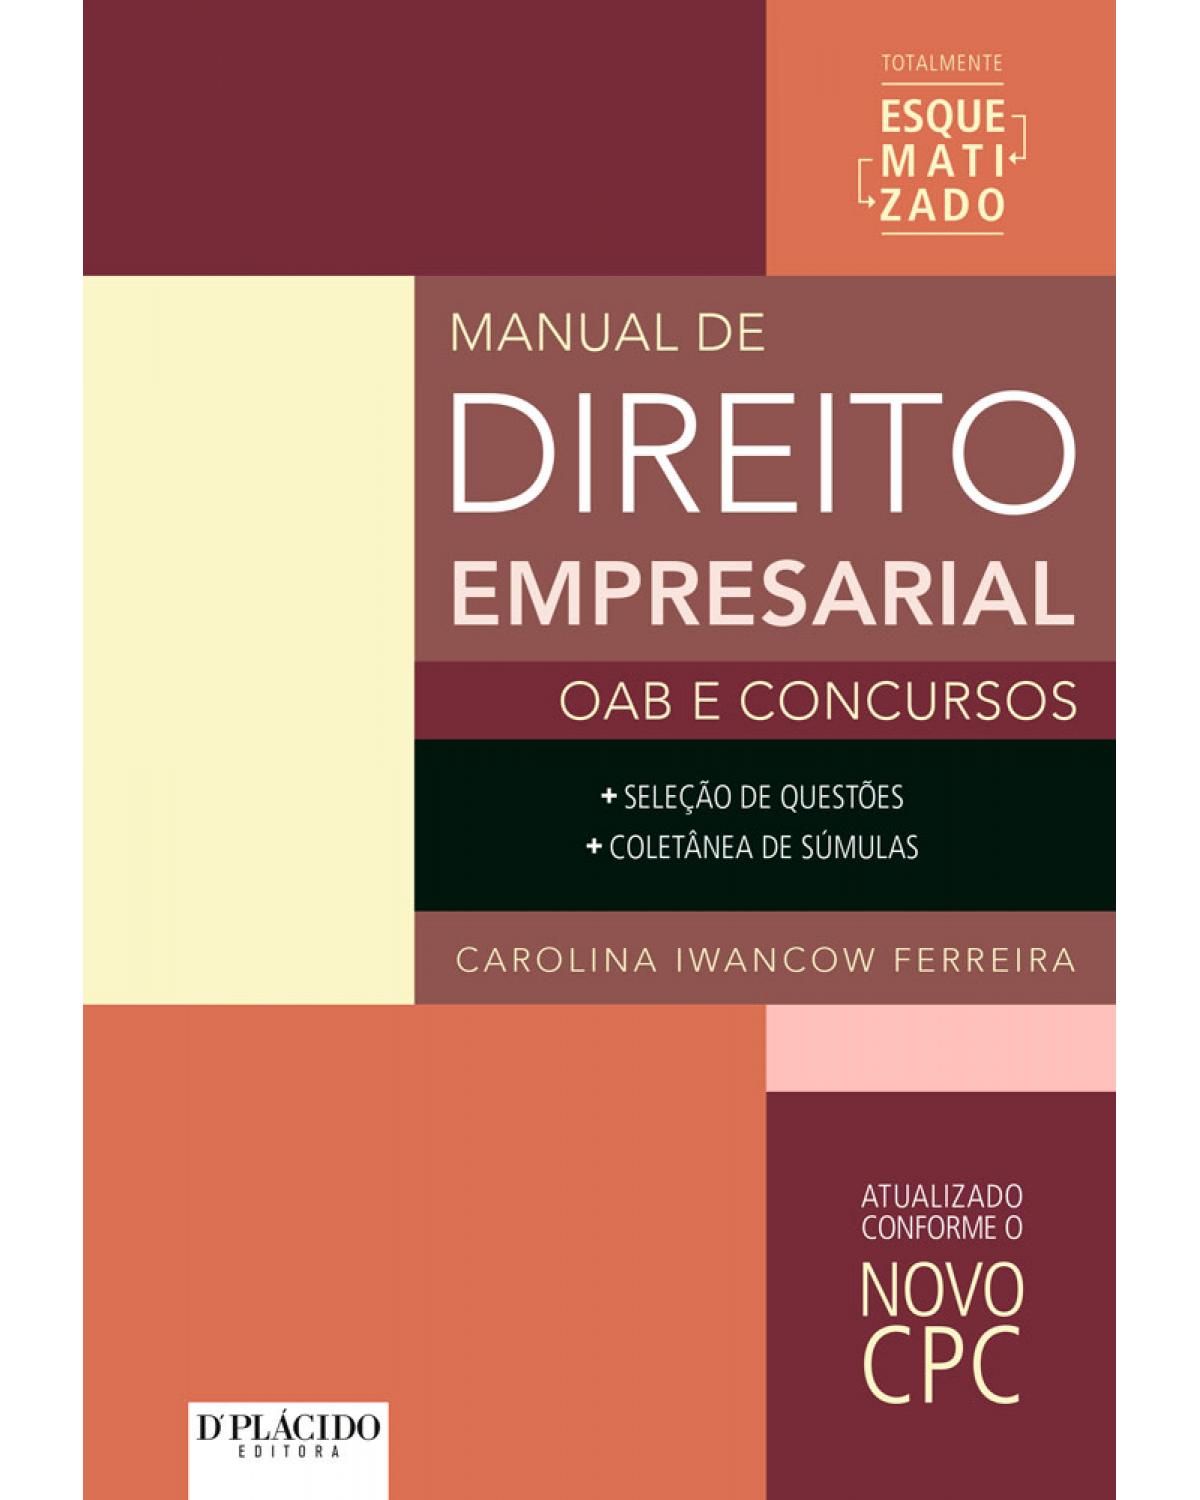 Manual de direito empresarial - OAB e concursos - 1ª Edição | 2016